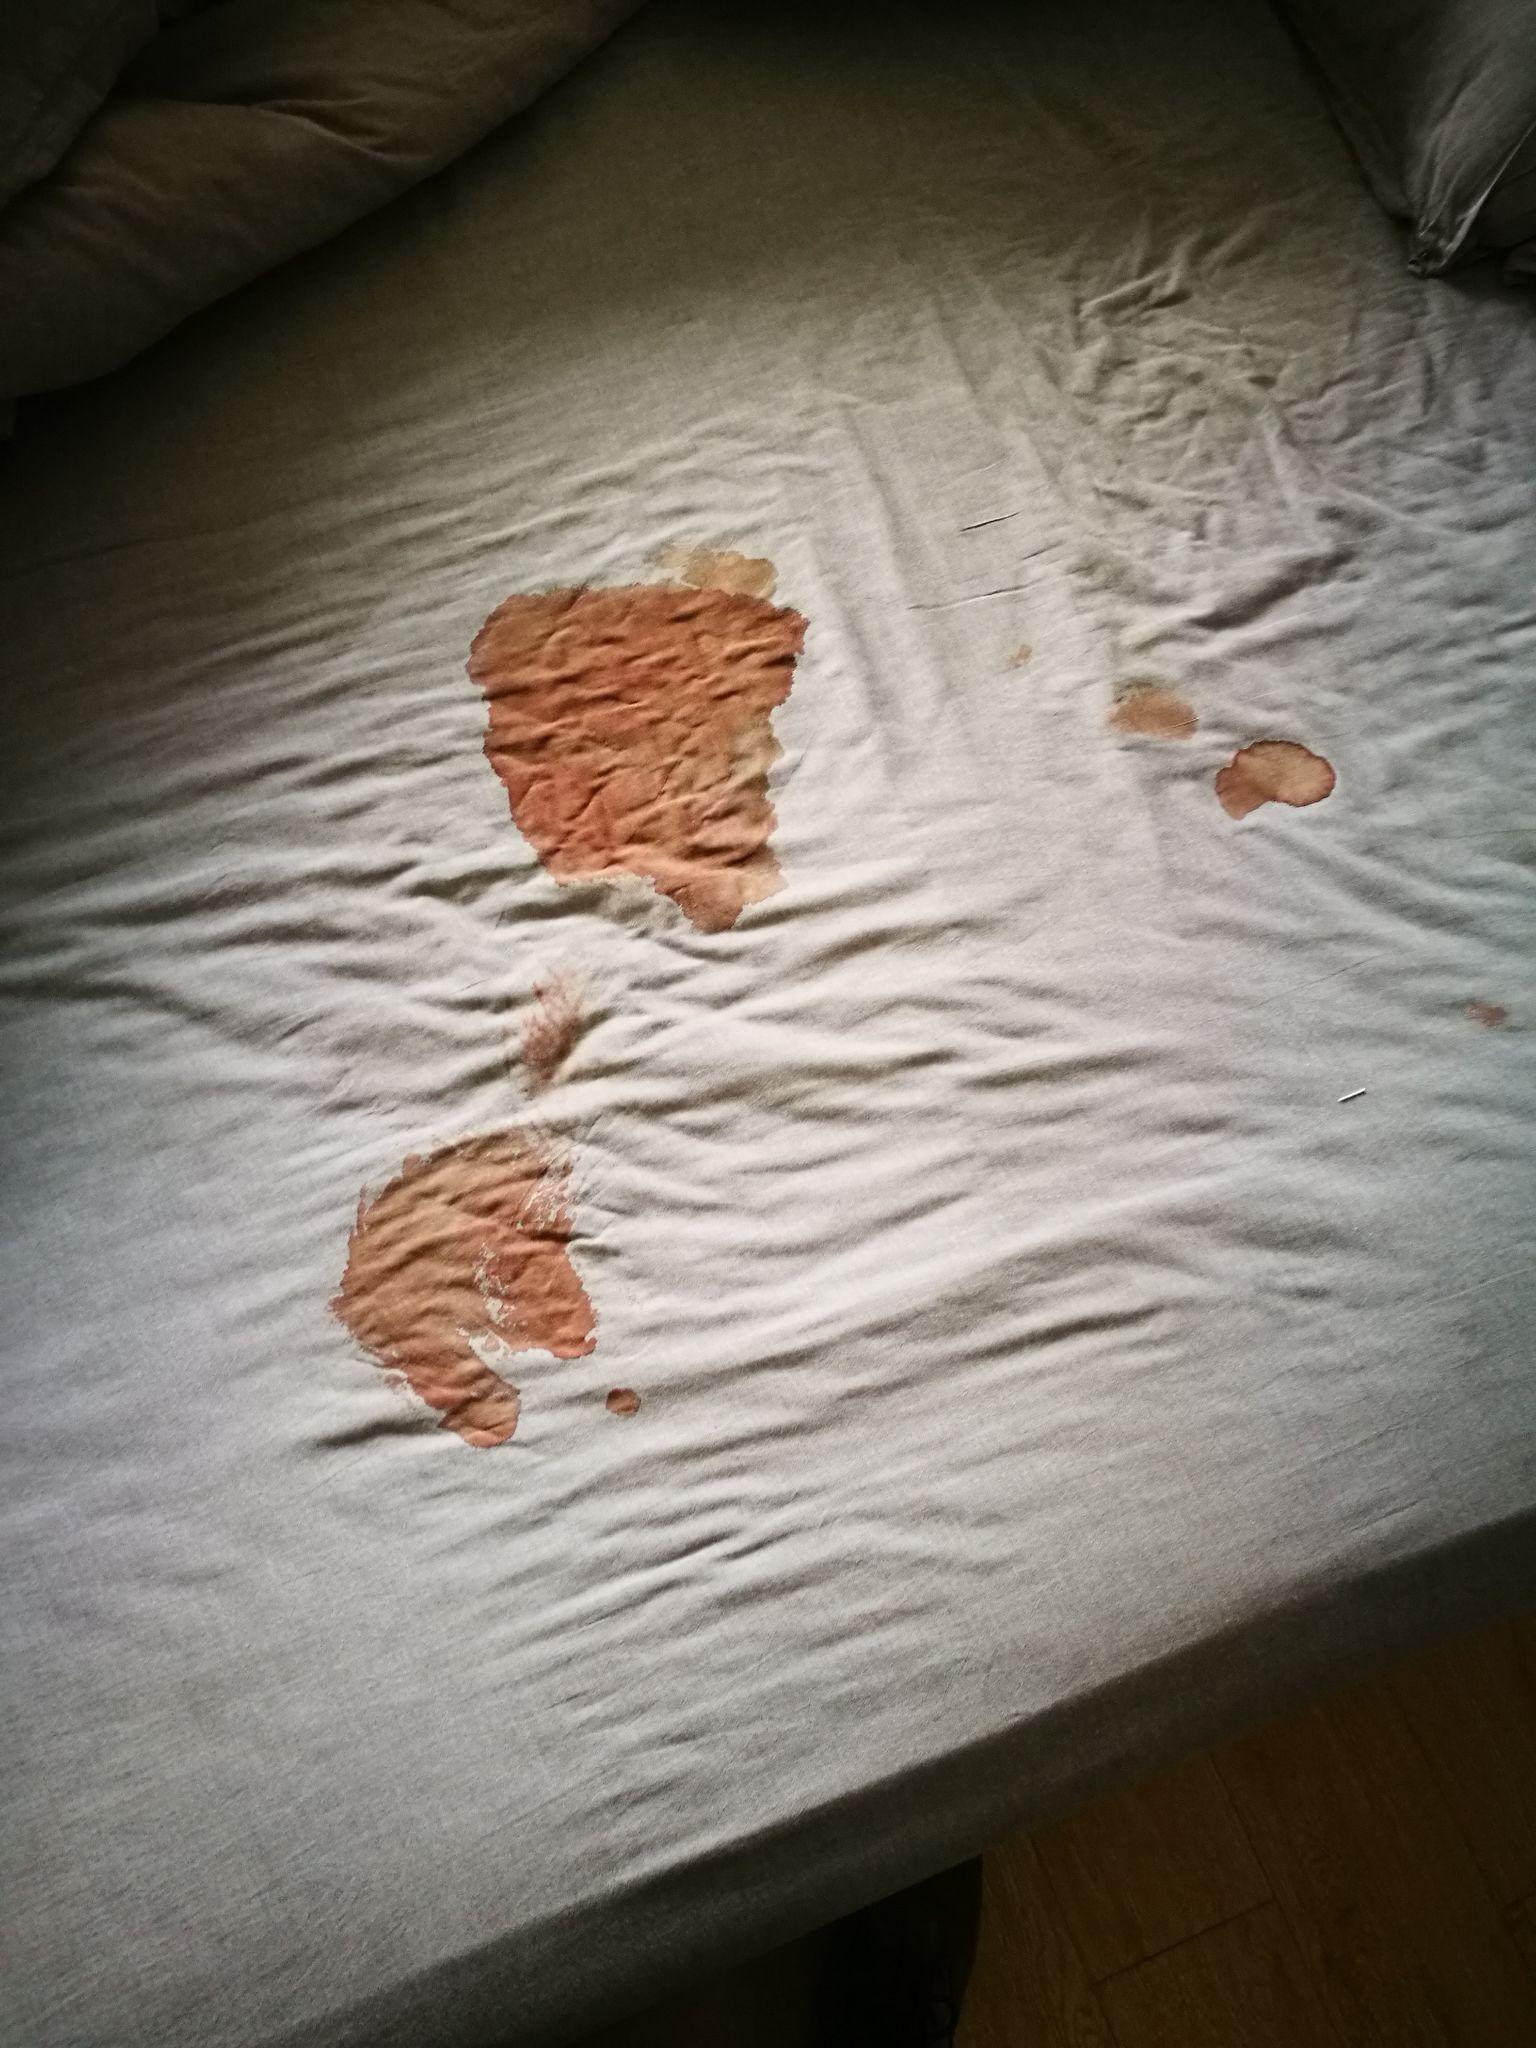 床单上的血落红图片